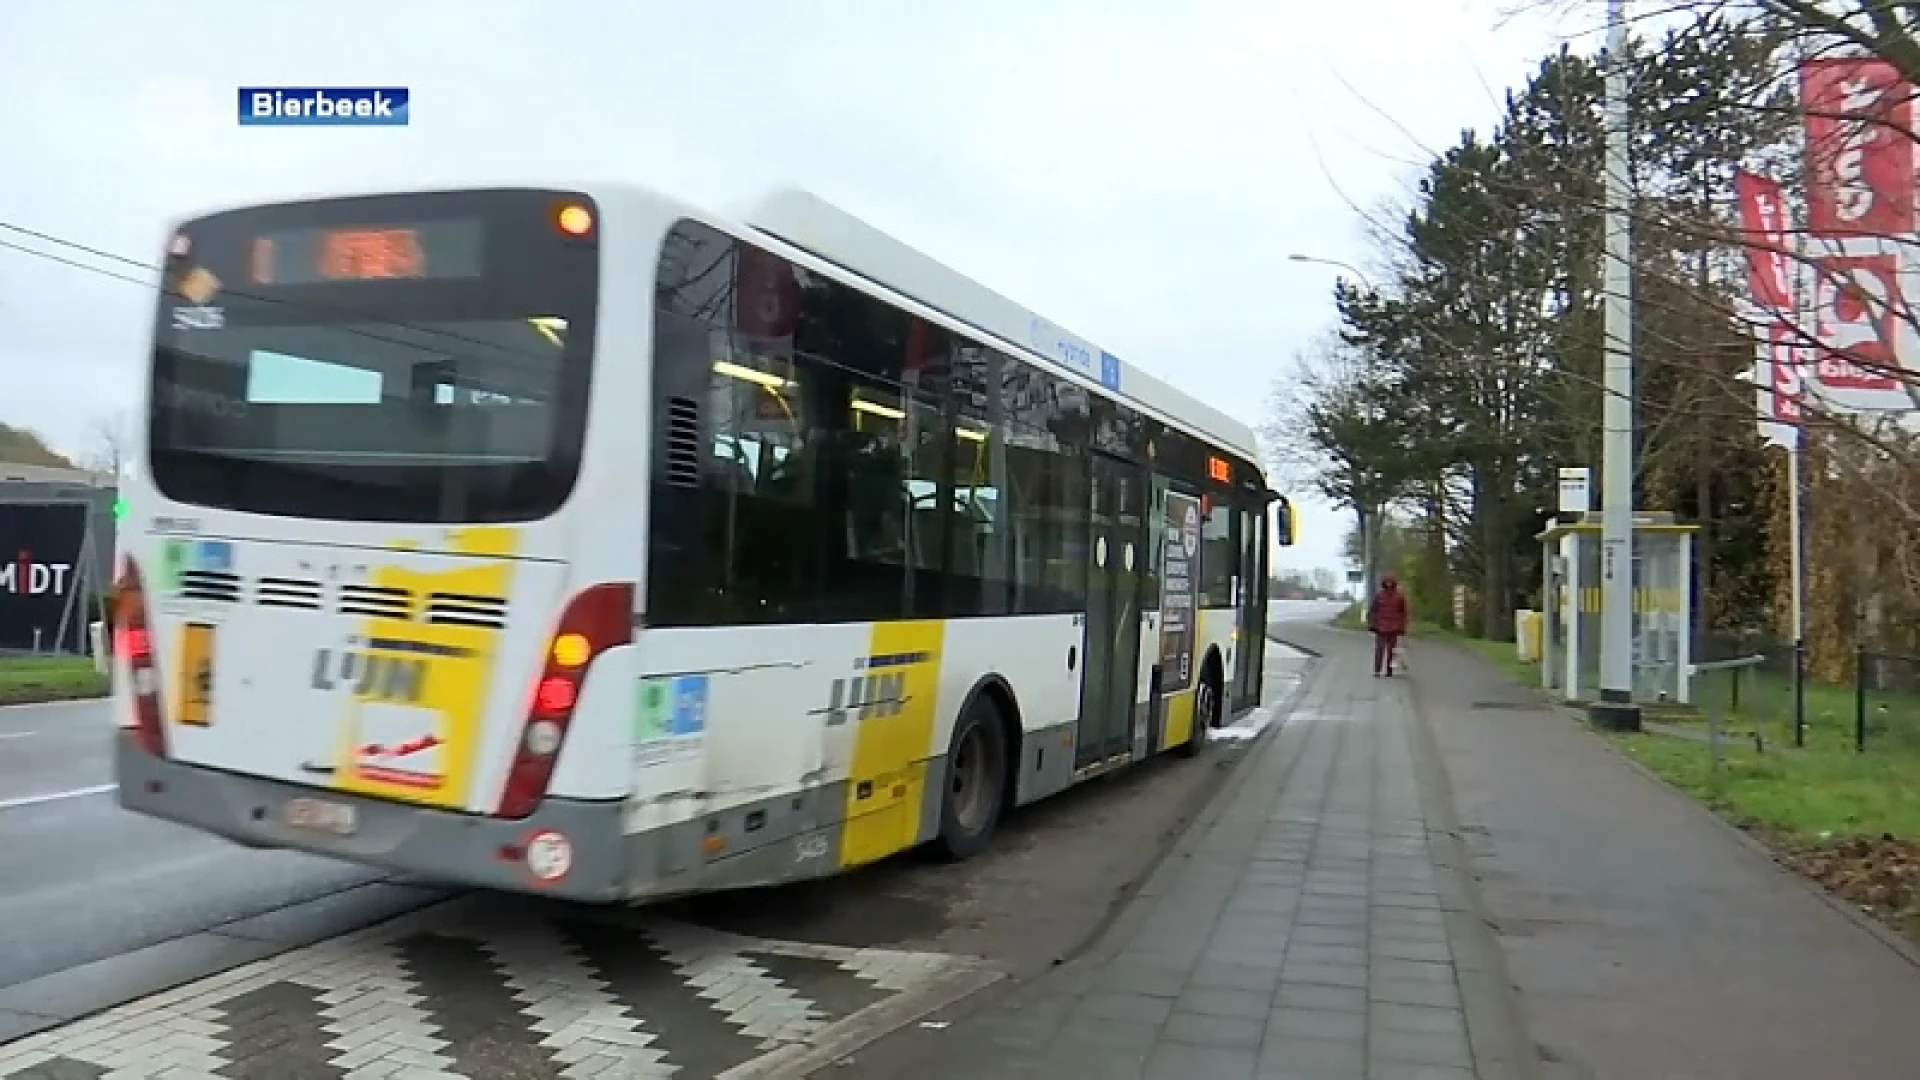 Verdwijnen er volgend jaar bushaltes in Bierbeek?